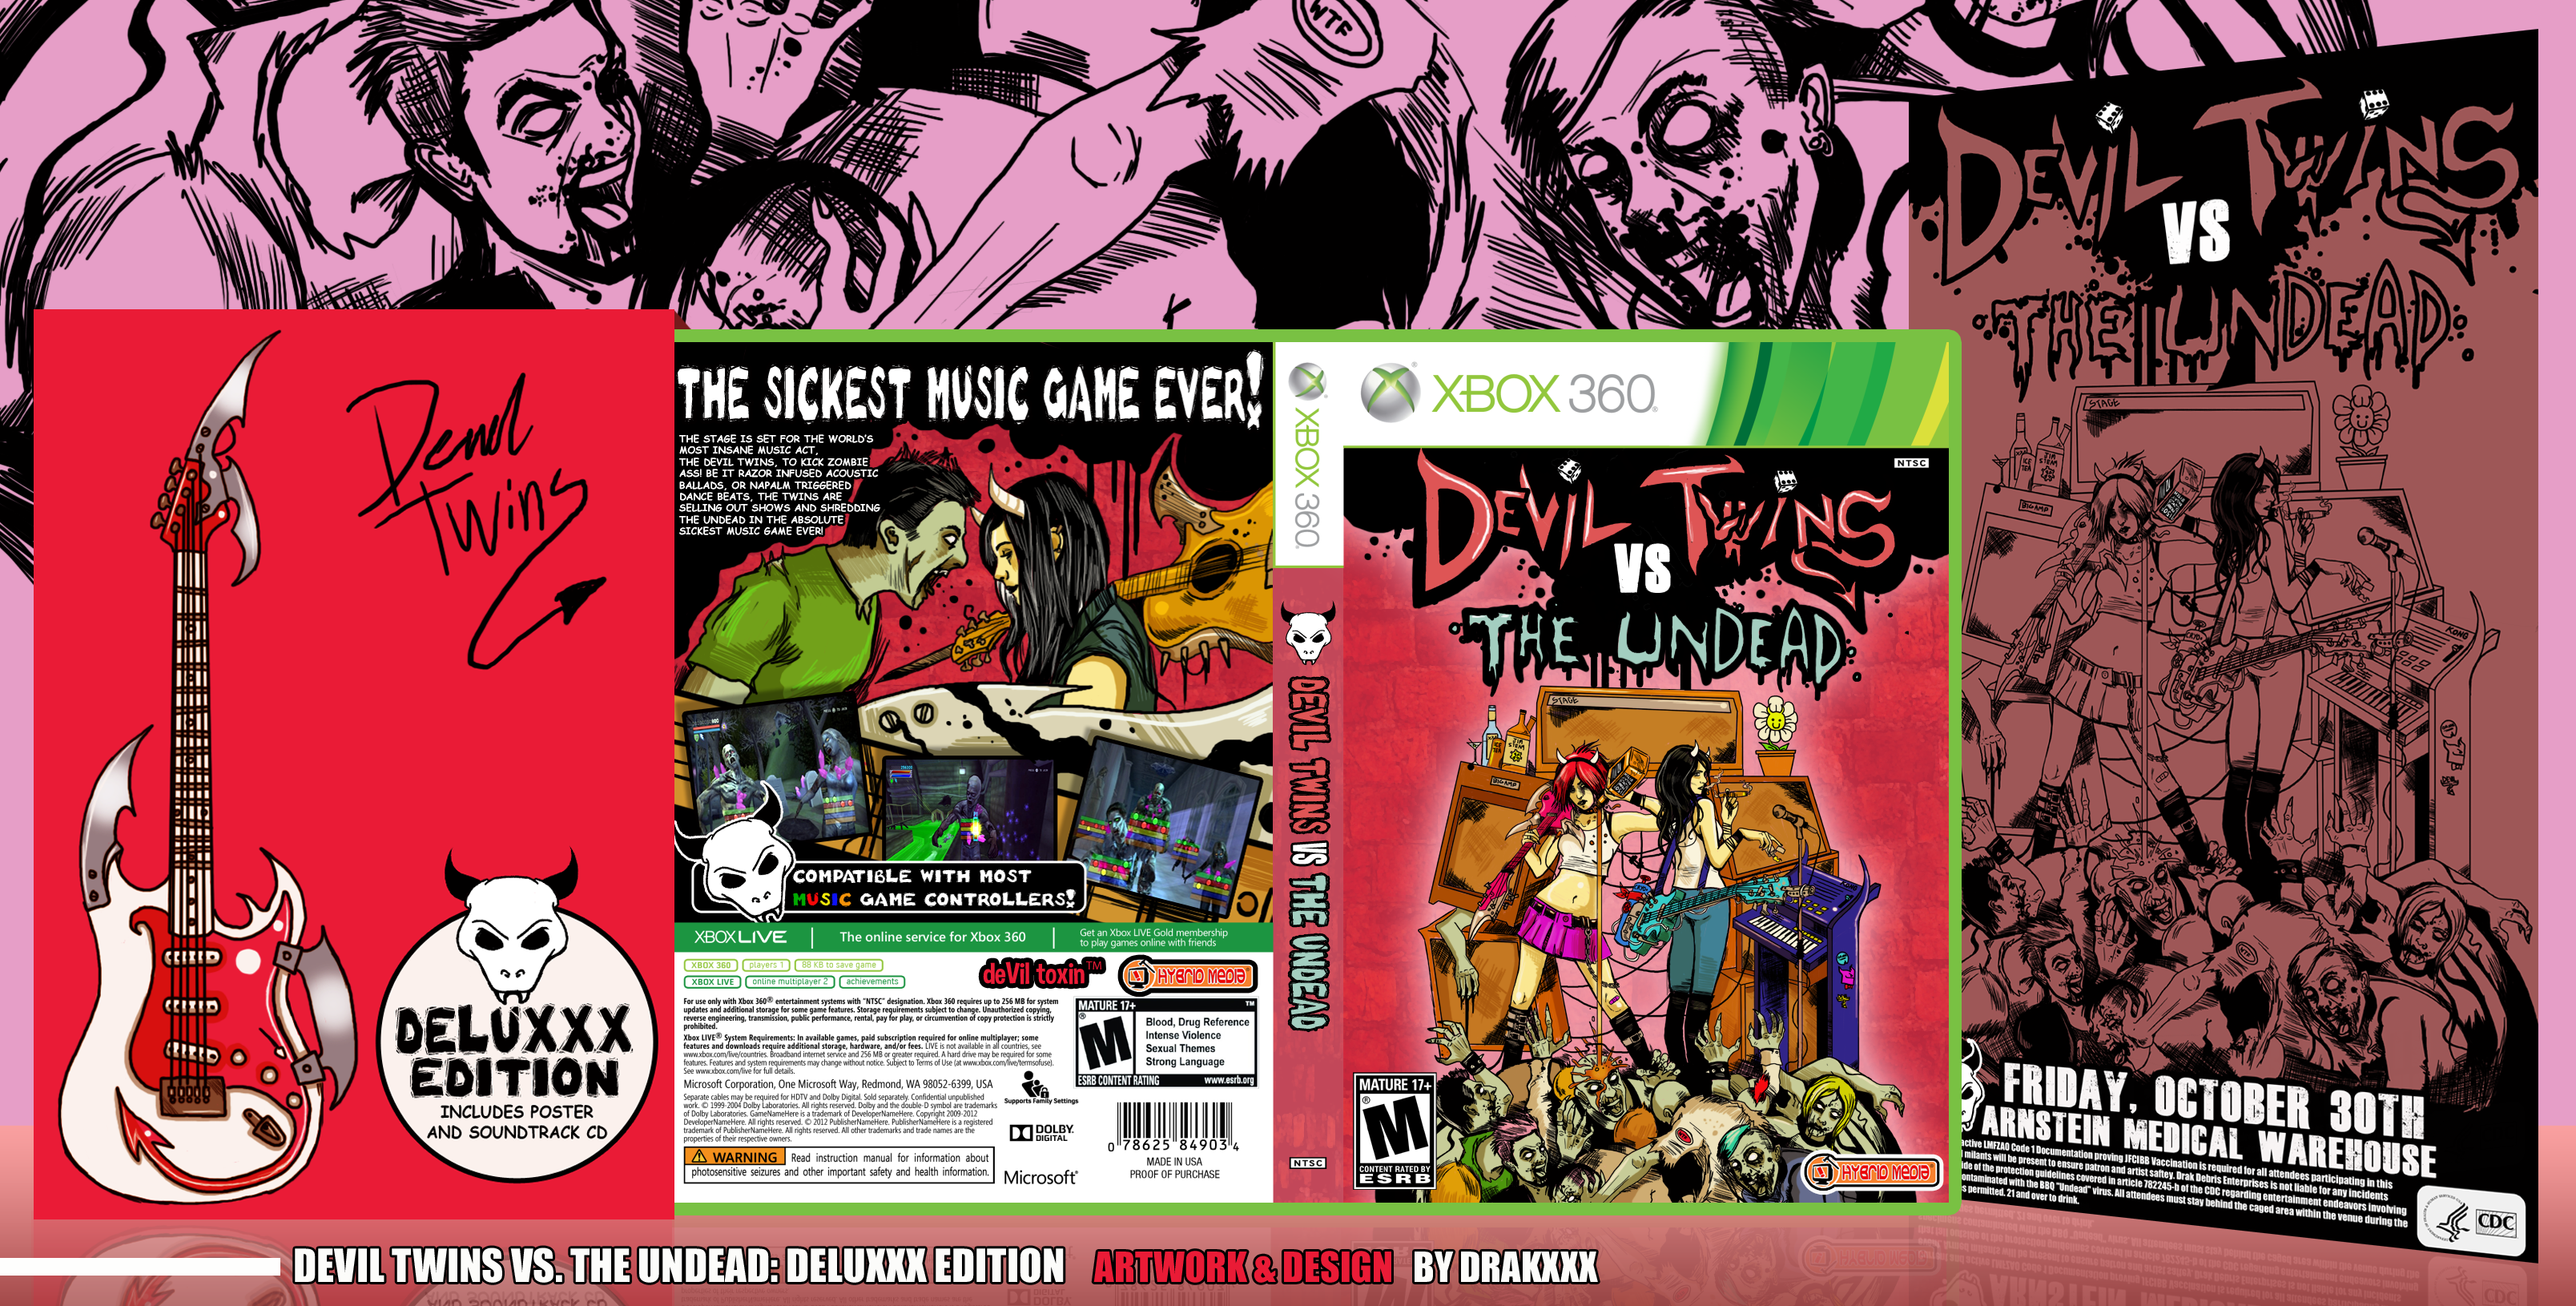 Devil Twins vs. The Undead: Deluxxx Edition box cover